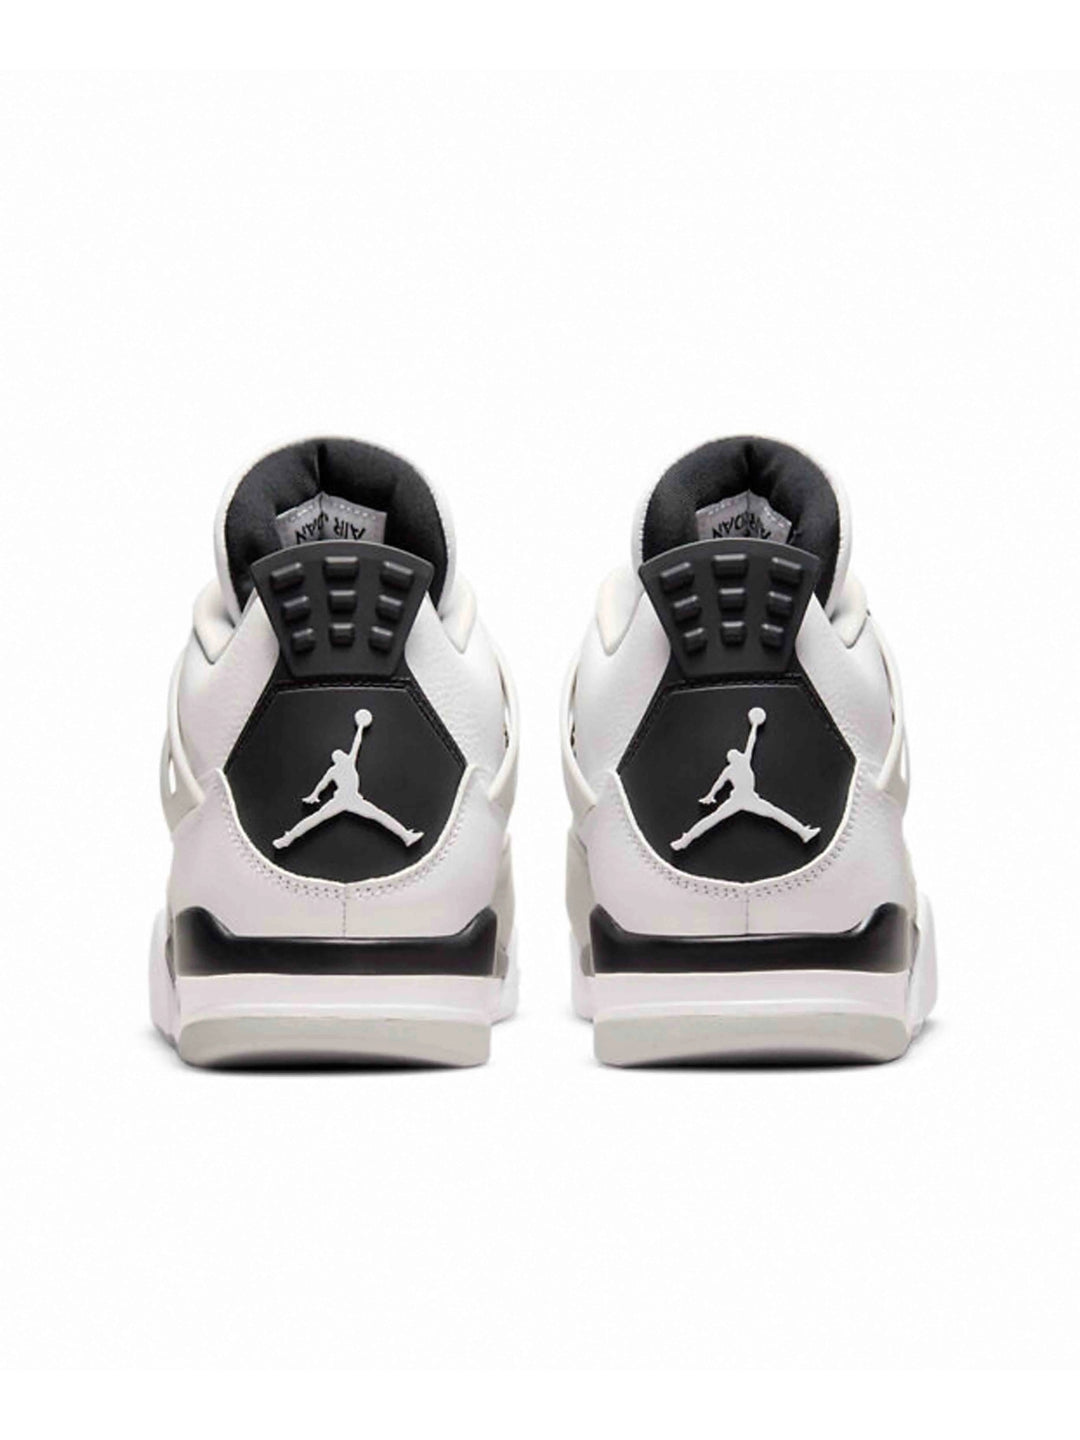 Nike Air Jordan 4 Retro Military Black Prior